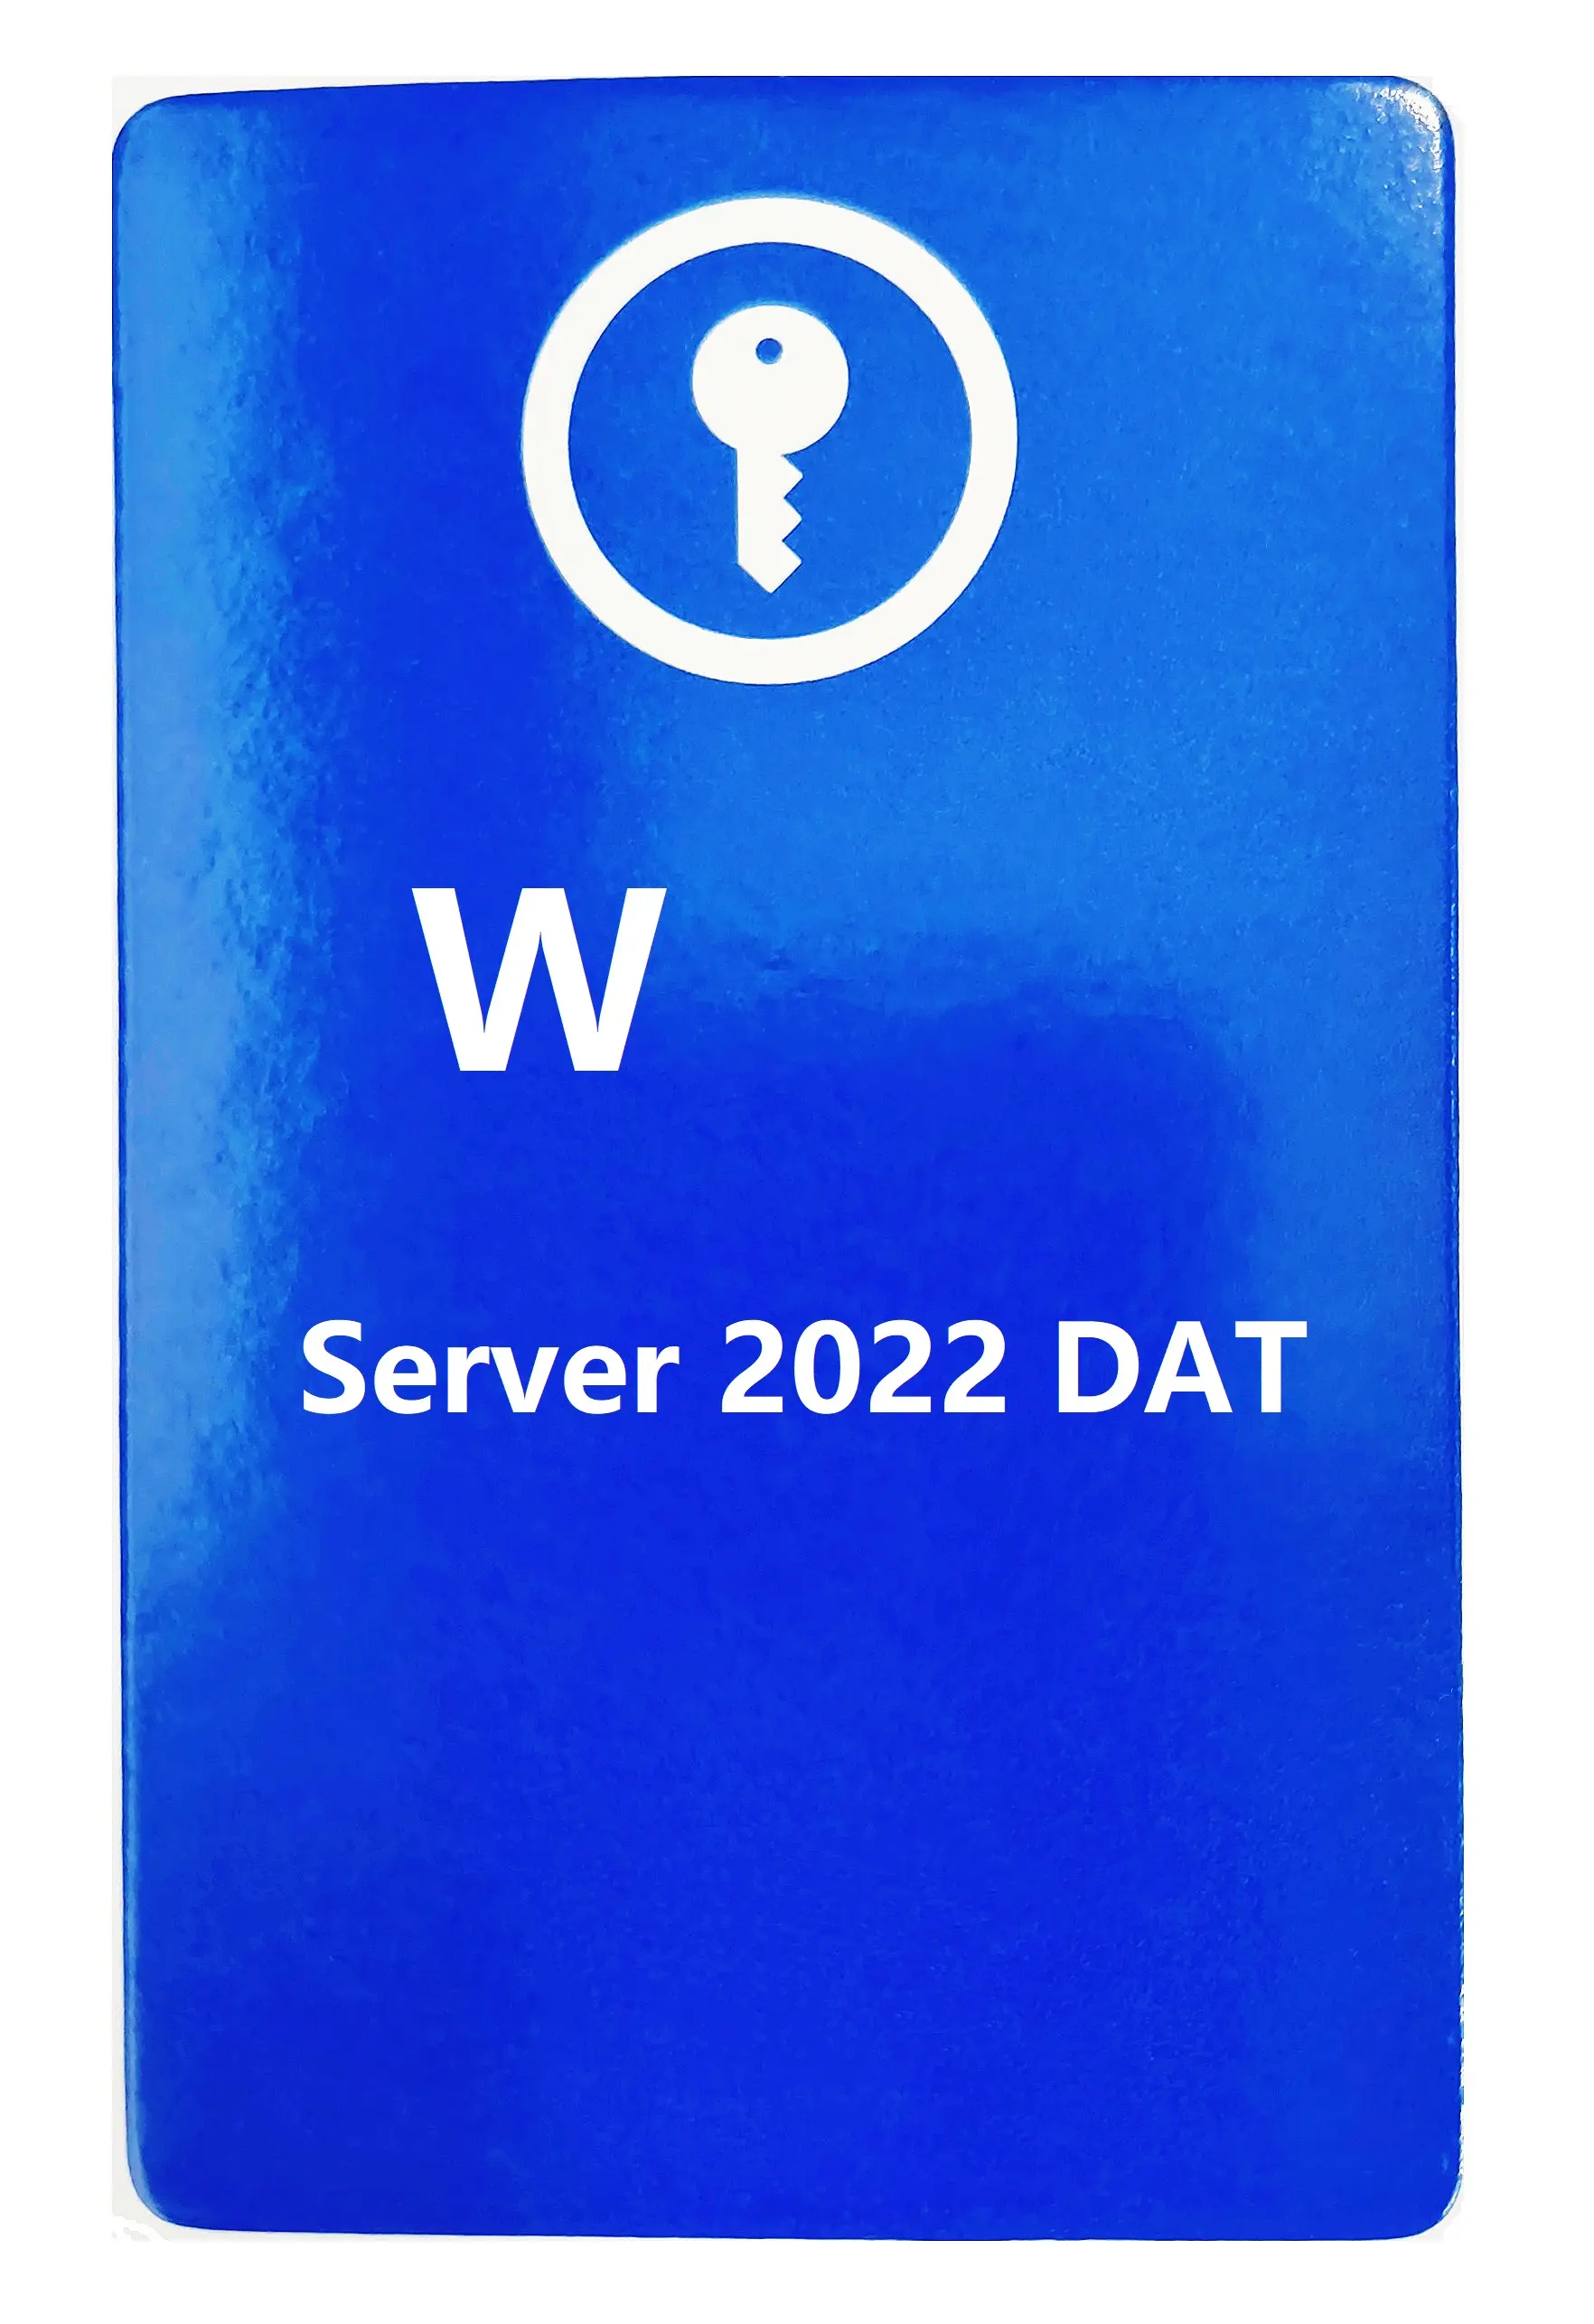 رخصة وصول العميل CAL Server إلى خادم ويندوز 2019 RDS 50 مستخدم